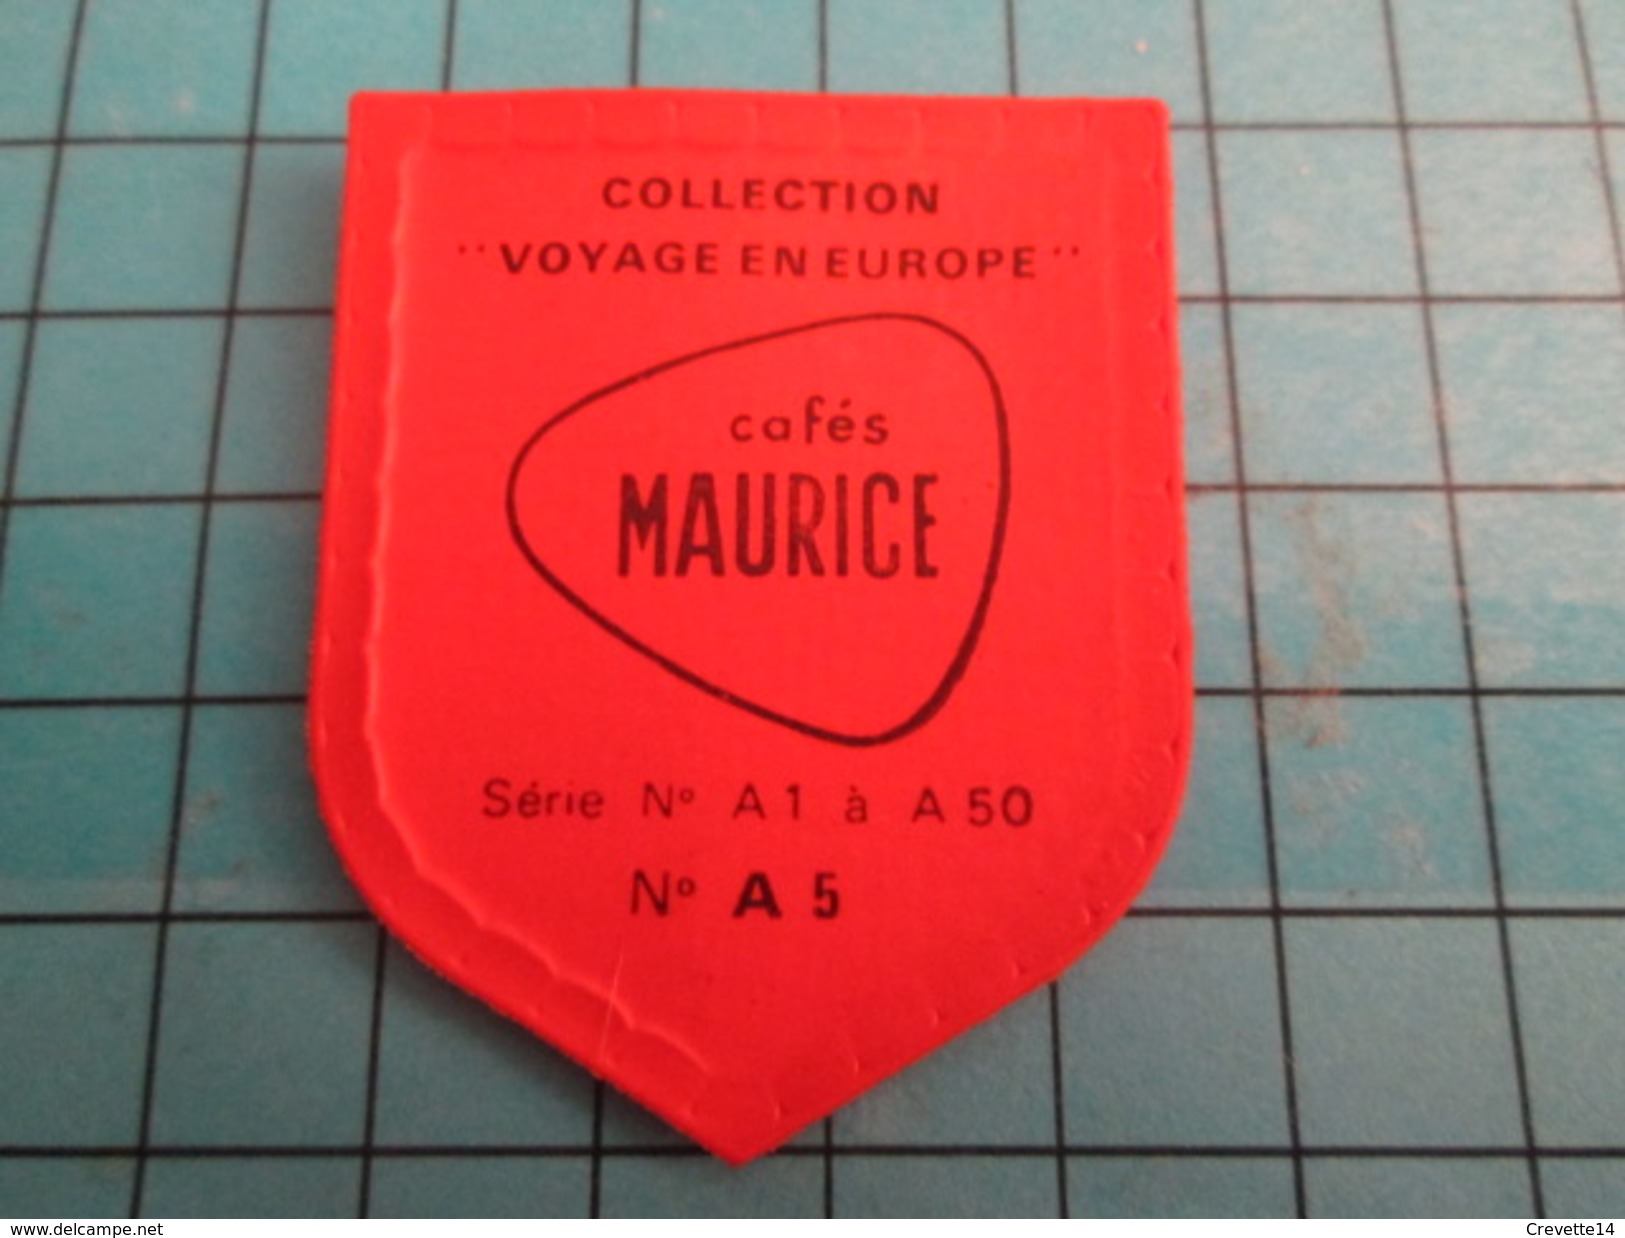 PUB 615 Ecusson Publicitaire Années 60  CAFES MAURICE N° A5 COLOGNE Collection  "VOYAGE EN EUROPE" - Magnets